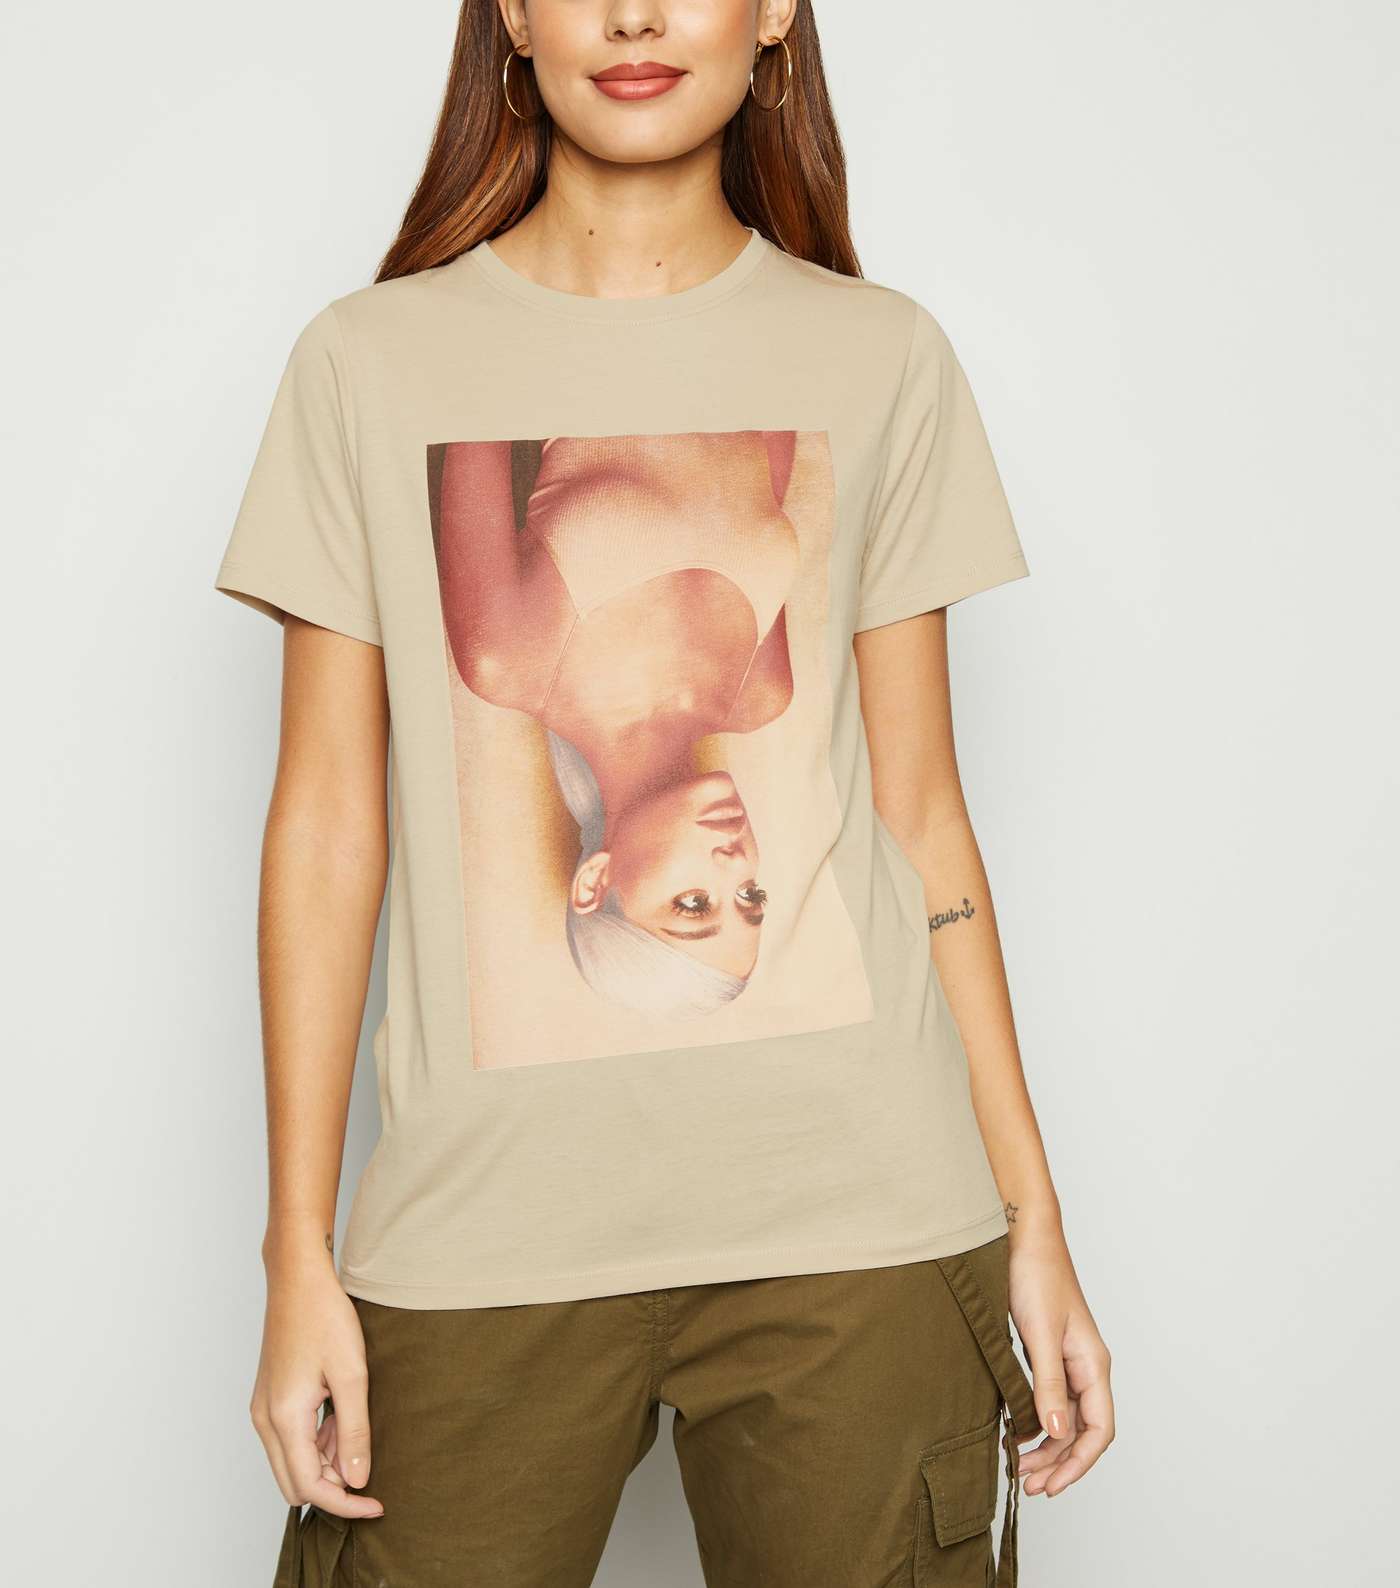 Stone Ariana Grande Sweetener Album T-Shirt